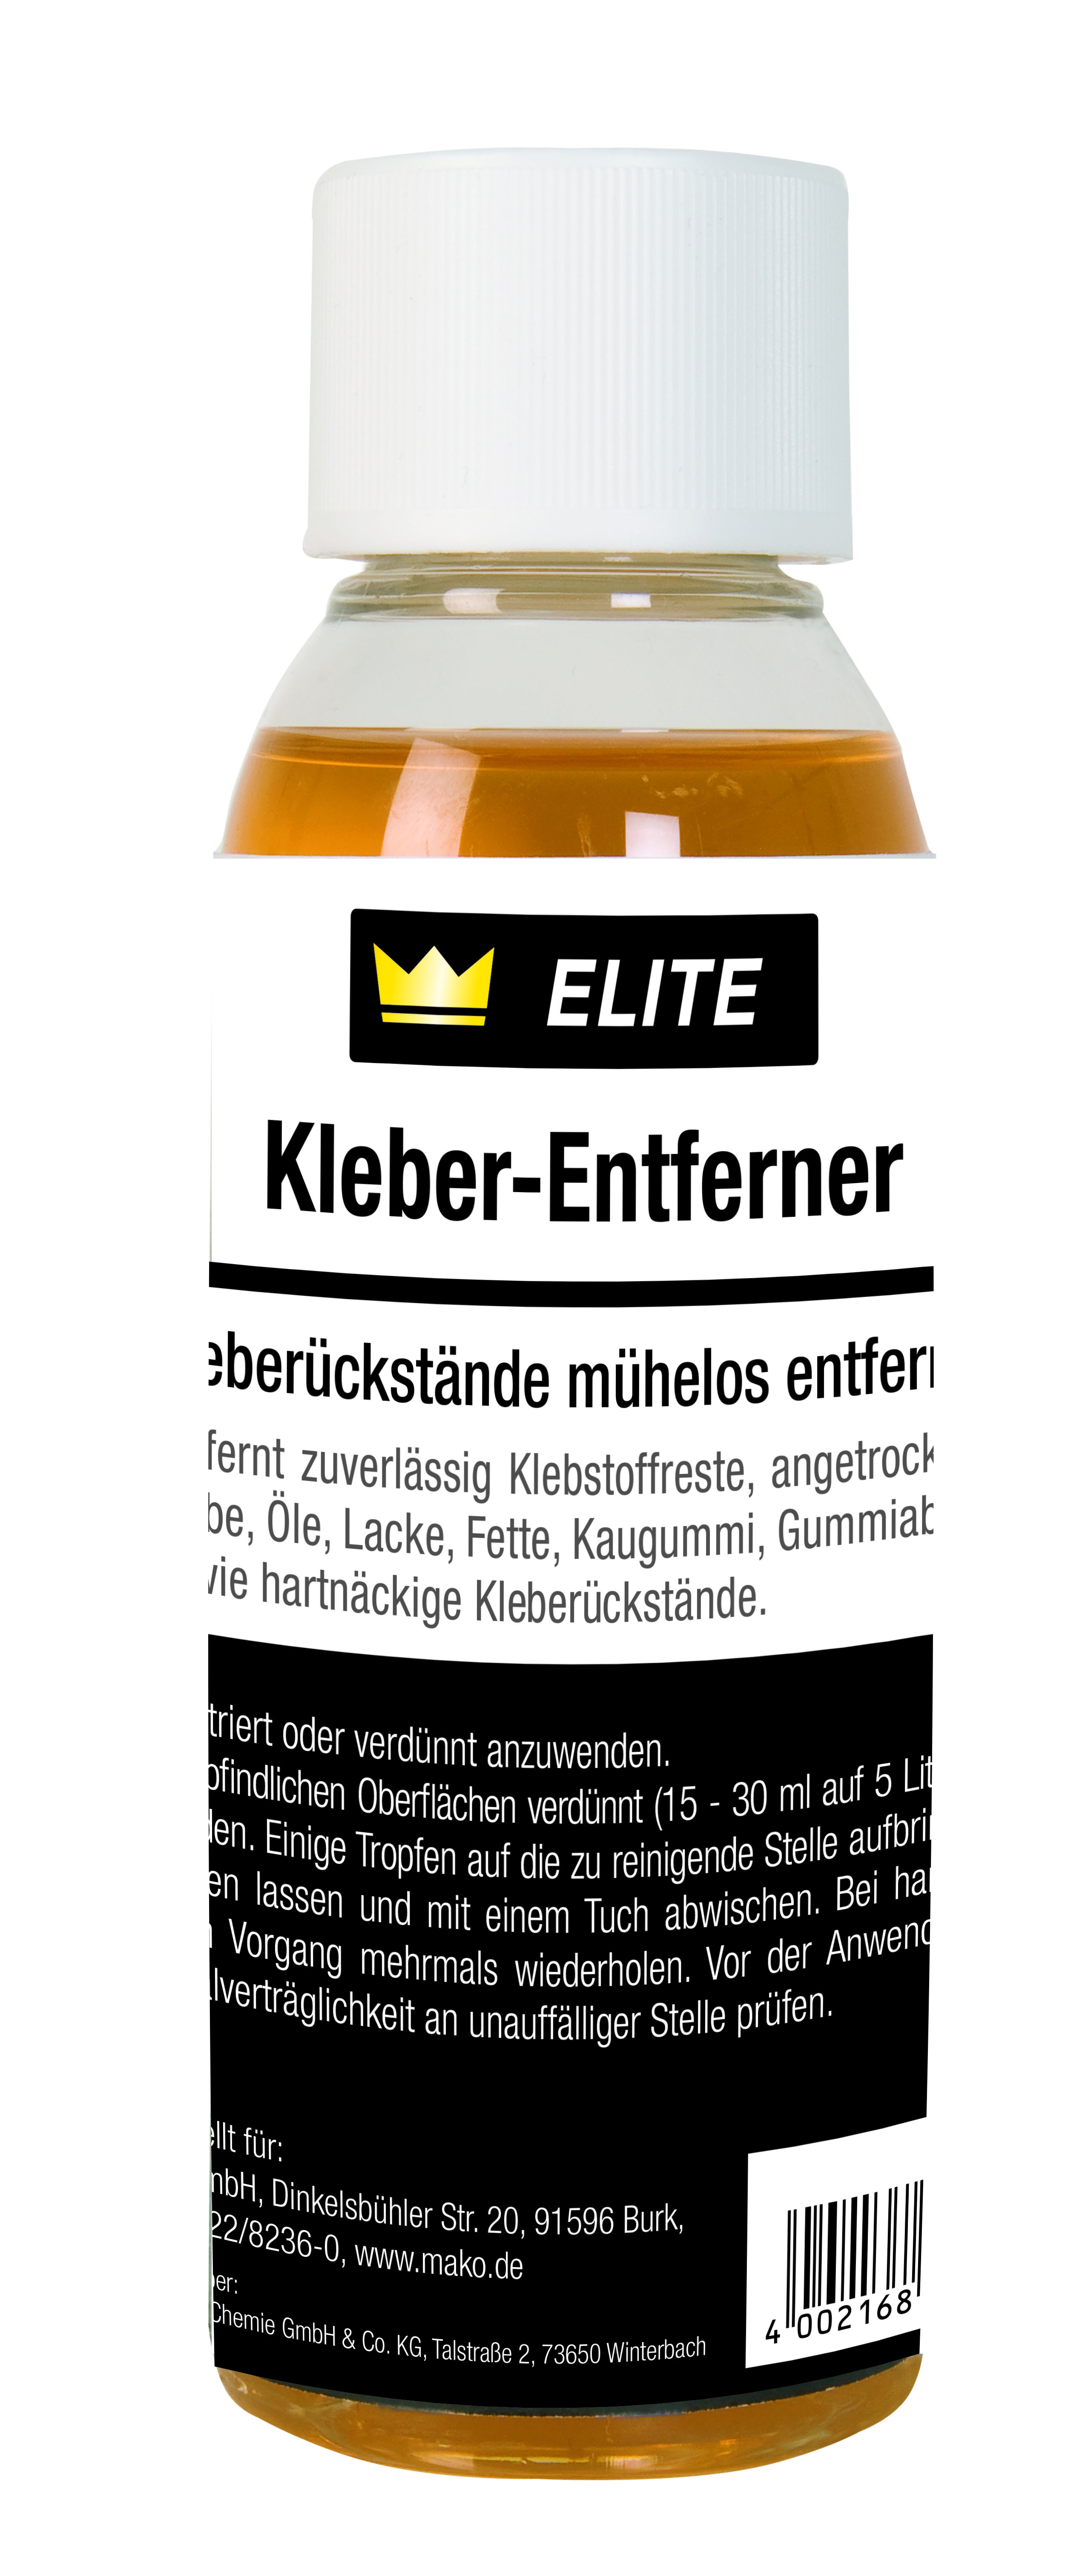 Mako Kleber-Entferner ELITE